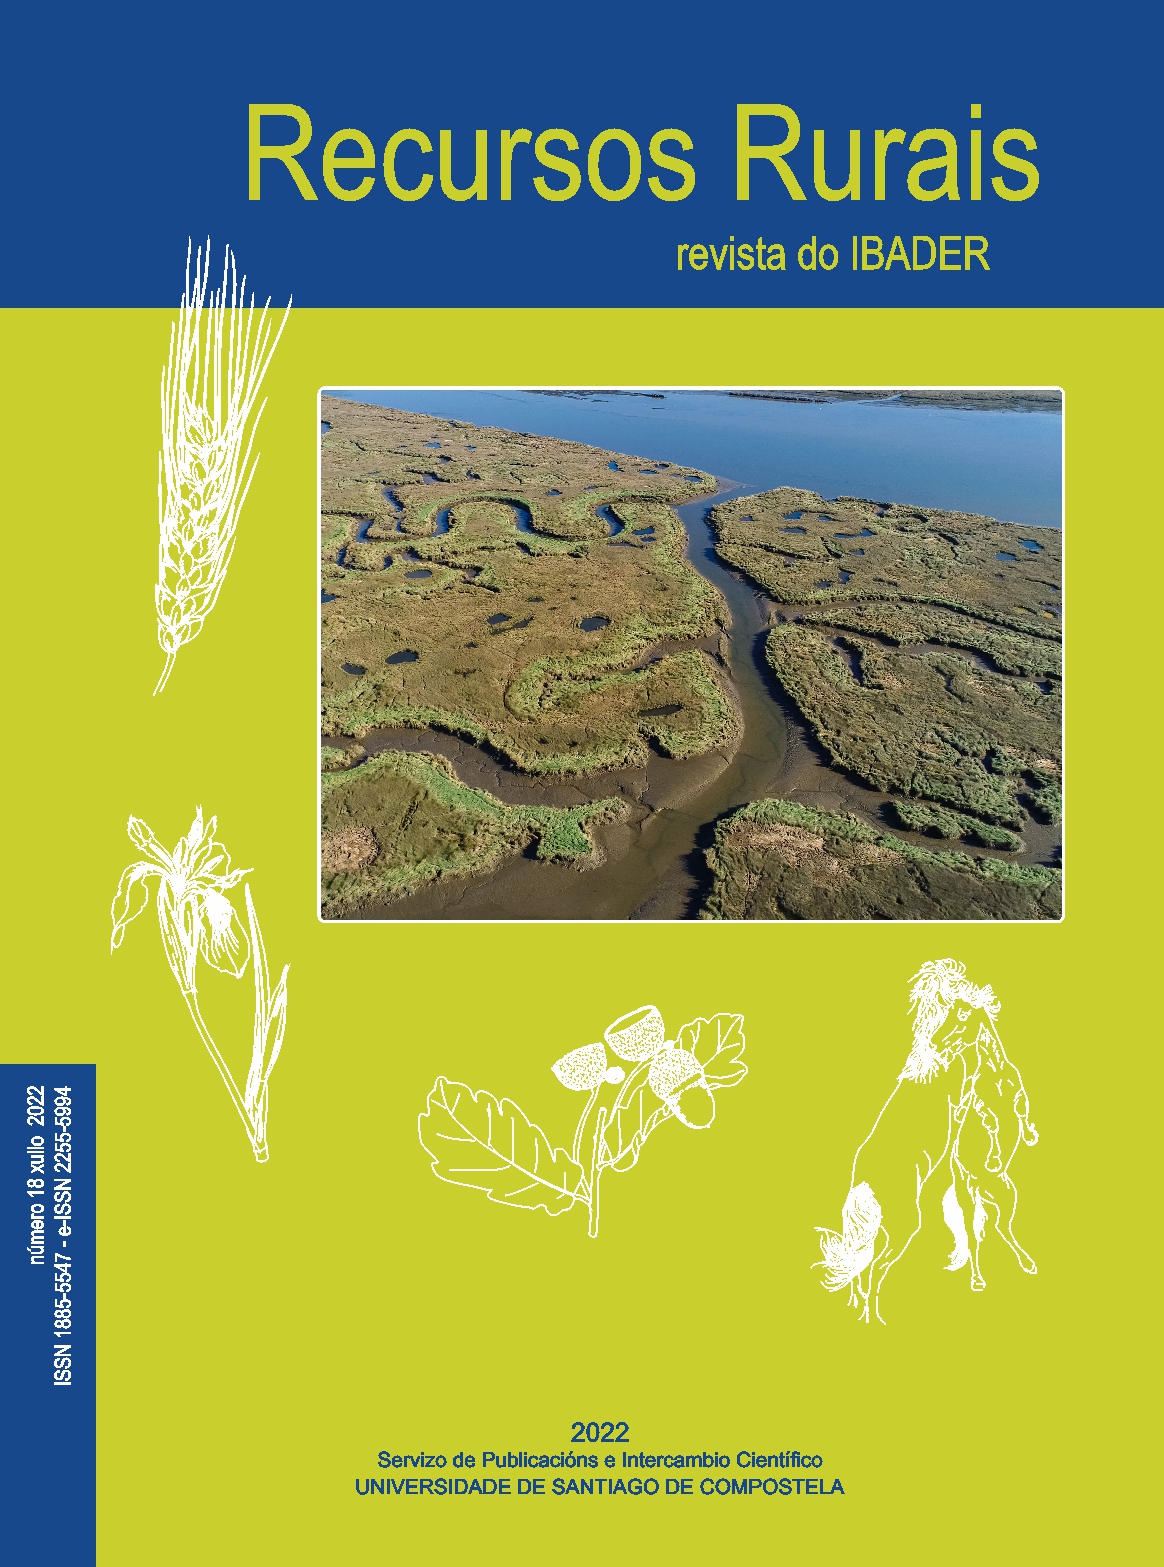 2022/07/26: Publicado o novo número da revista científico-técnica Recursos Rurais (nº 18 - Xullo 2022) en acceso on-line